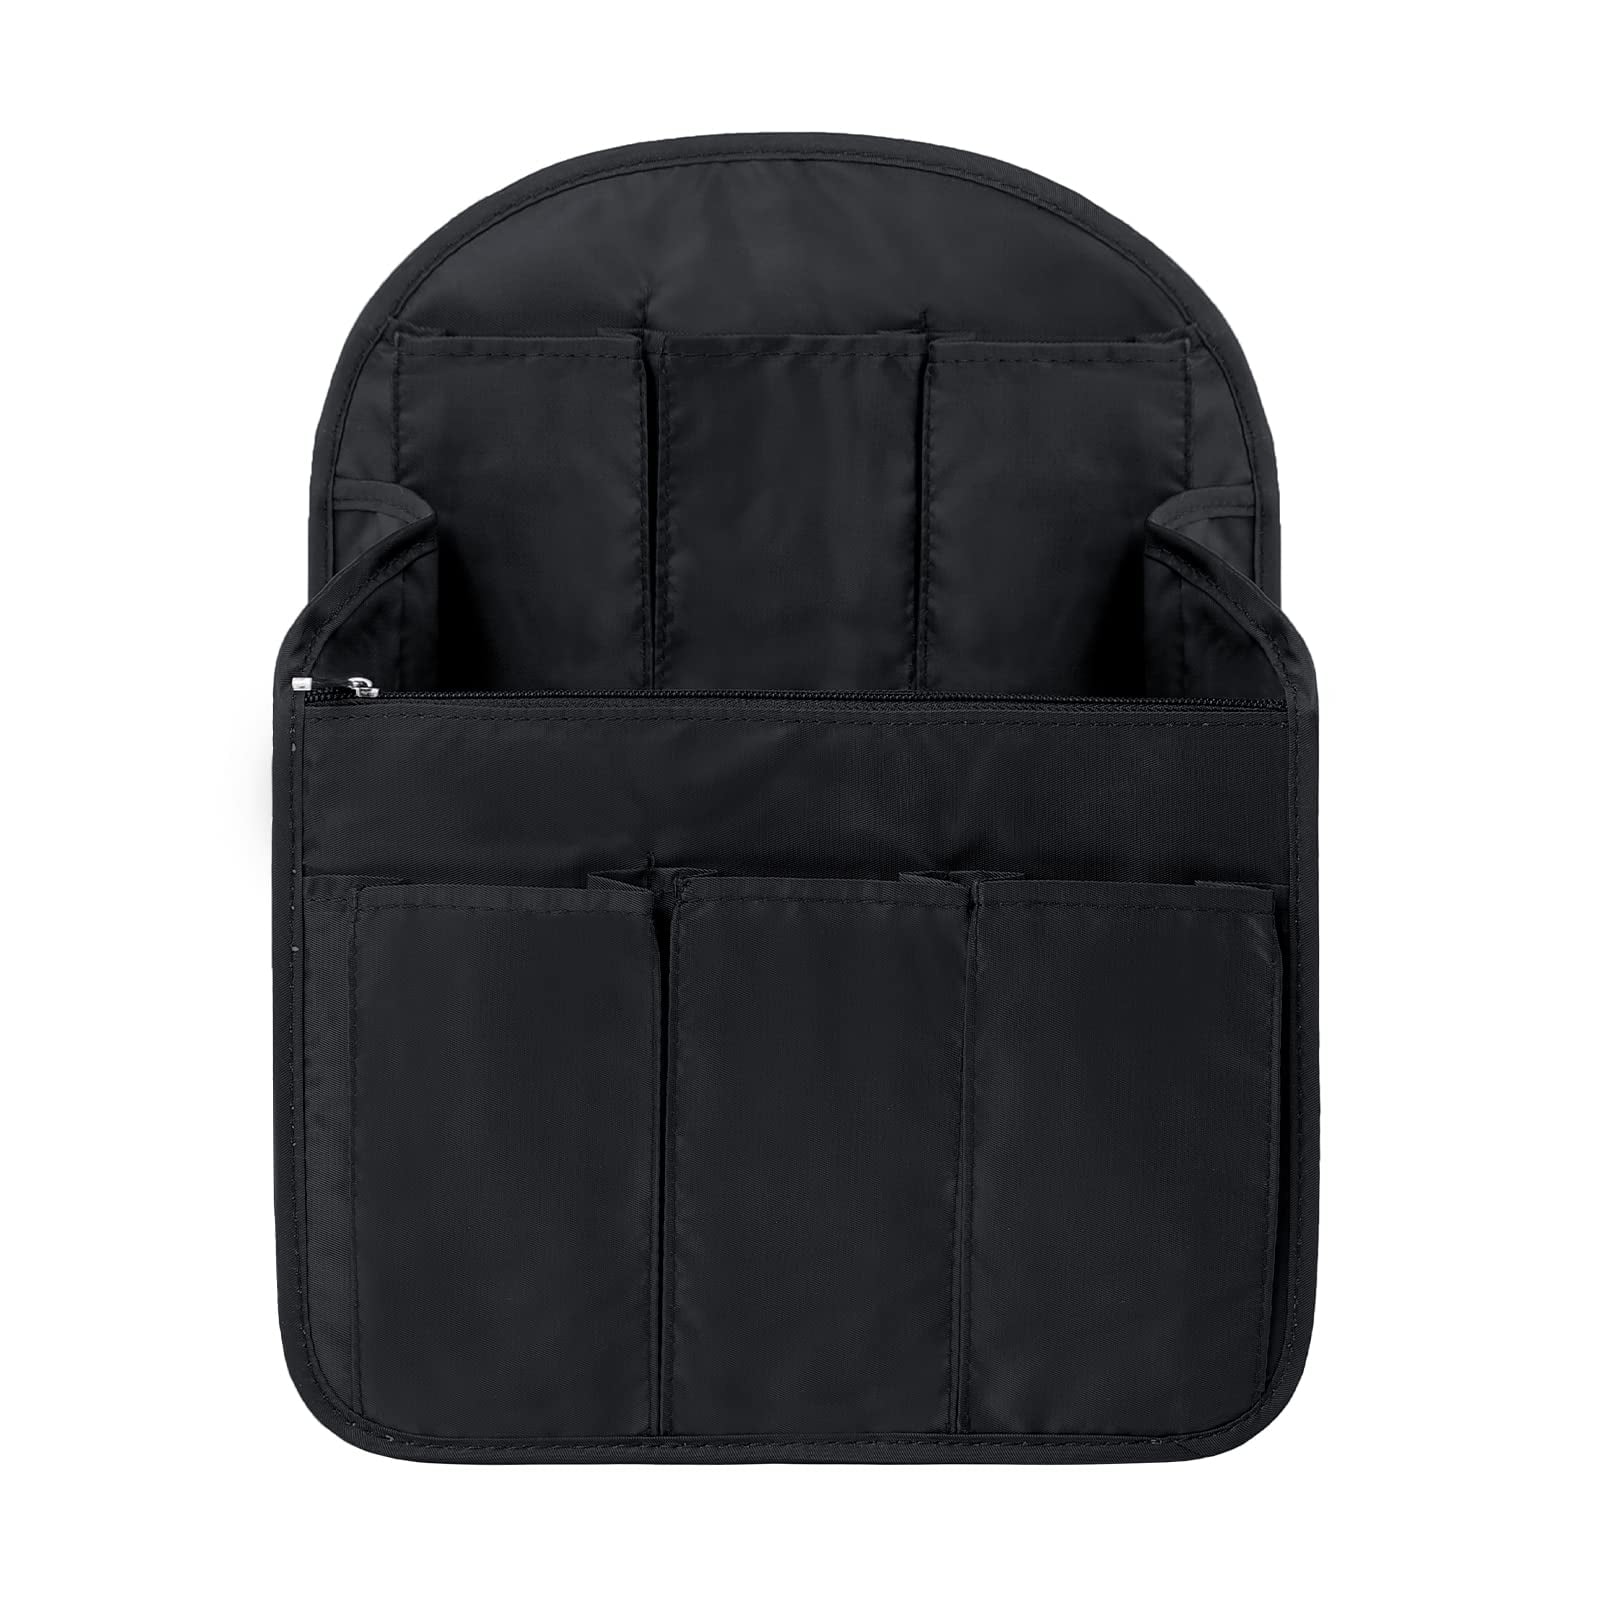 IN Backpack Organizer Insert,Nylon Organizer Insert for Backpack Rucksack  Should